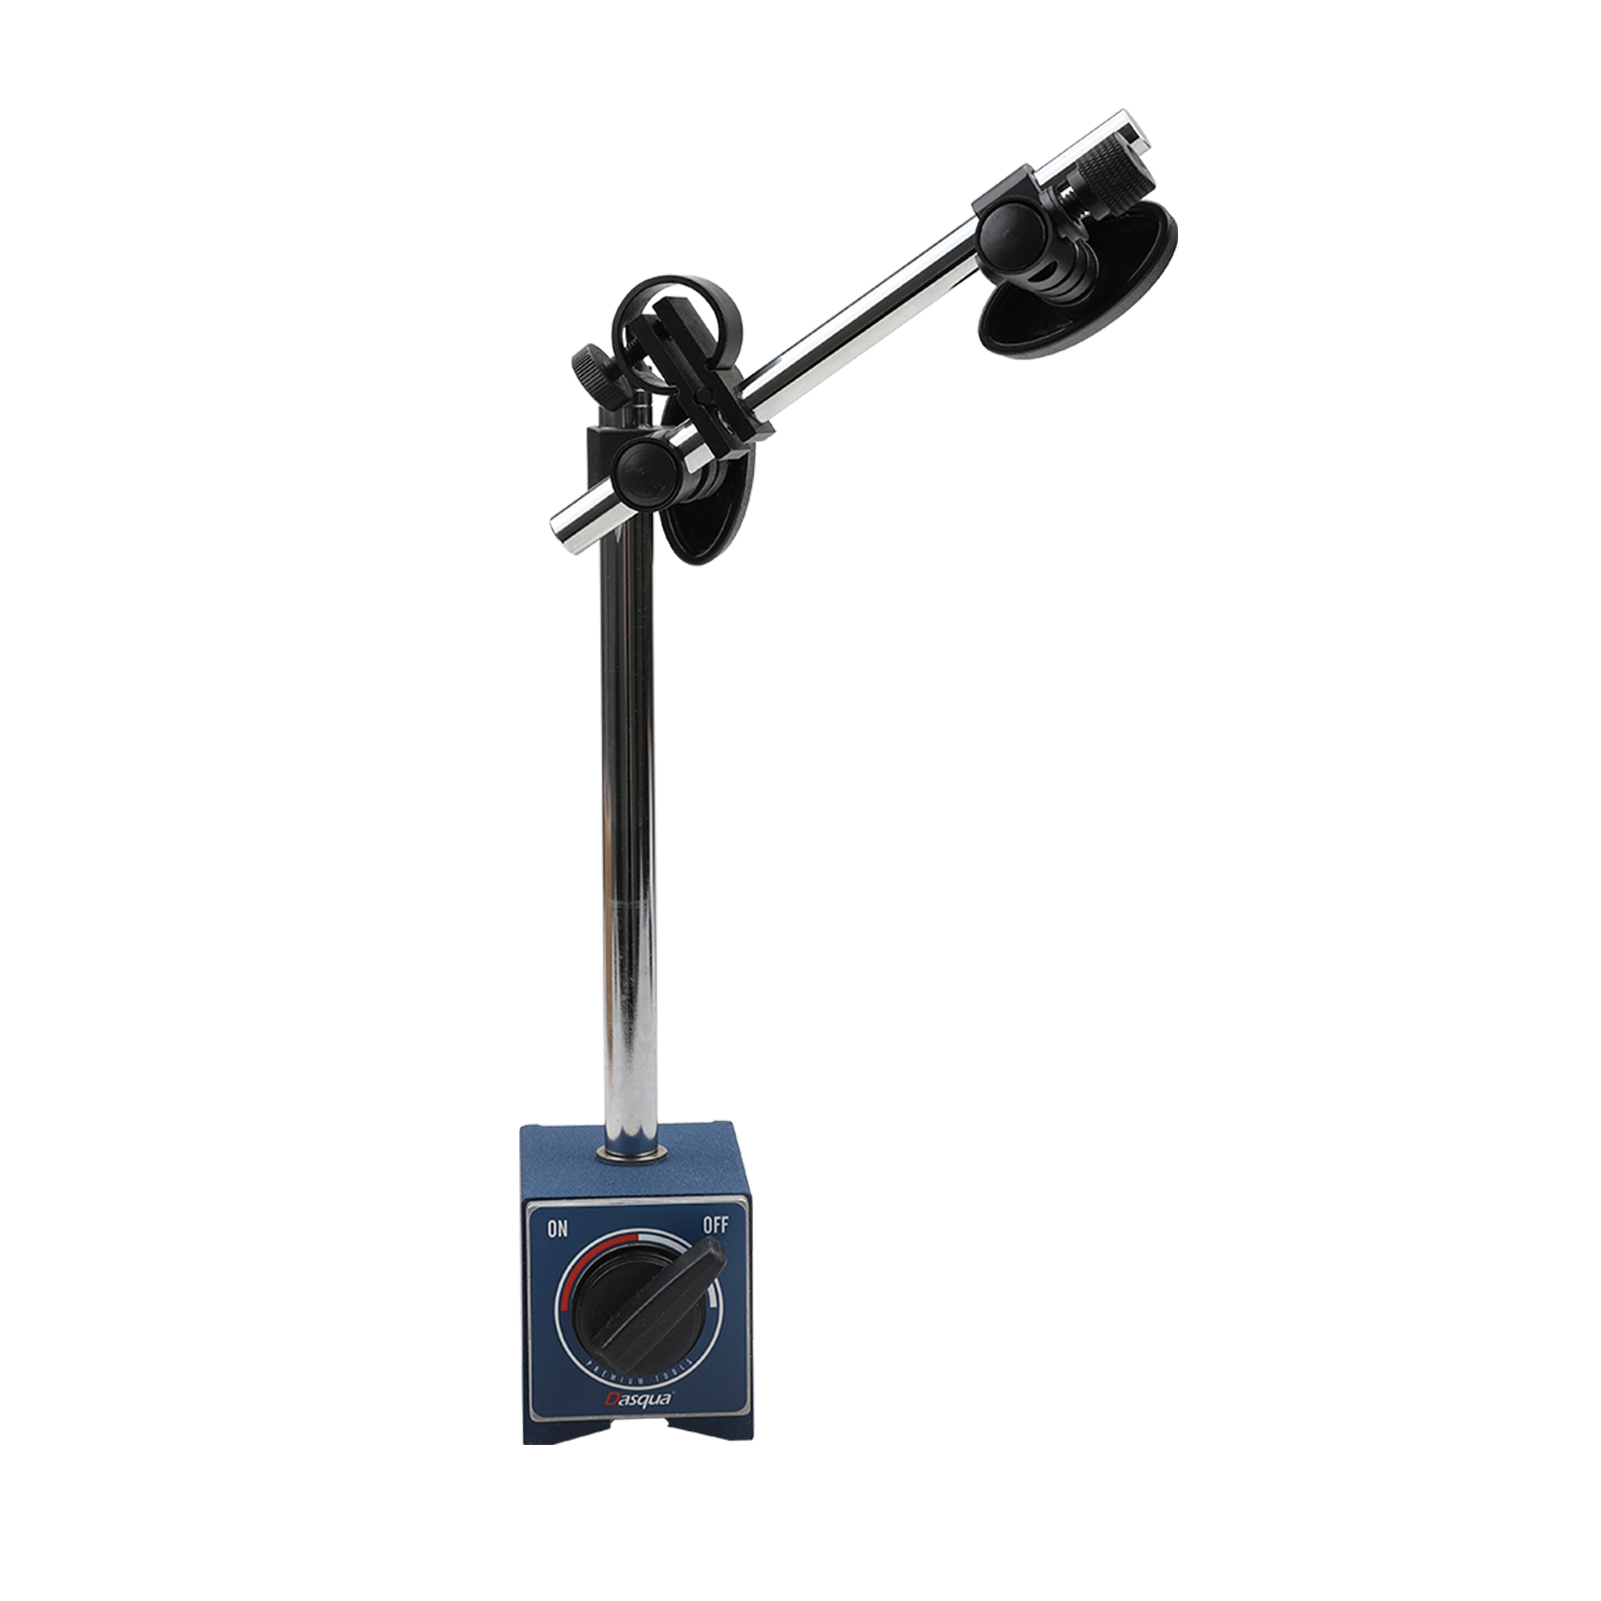 DASQUA Base magnética de 60 kg / 132 lb para indicadores de prueba de dial digital Indicadores de precisión industriales Soporte con ajuste fino